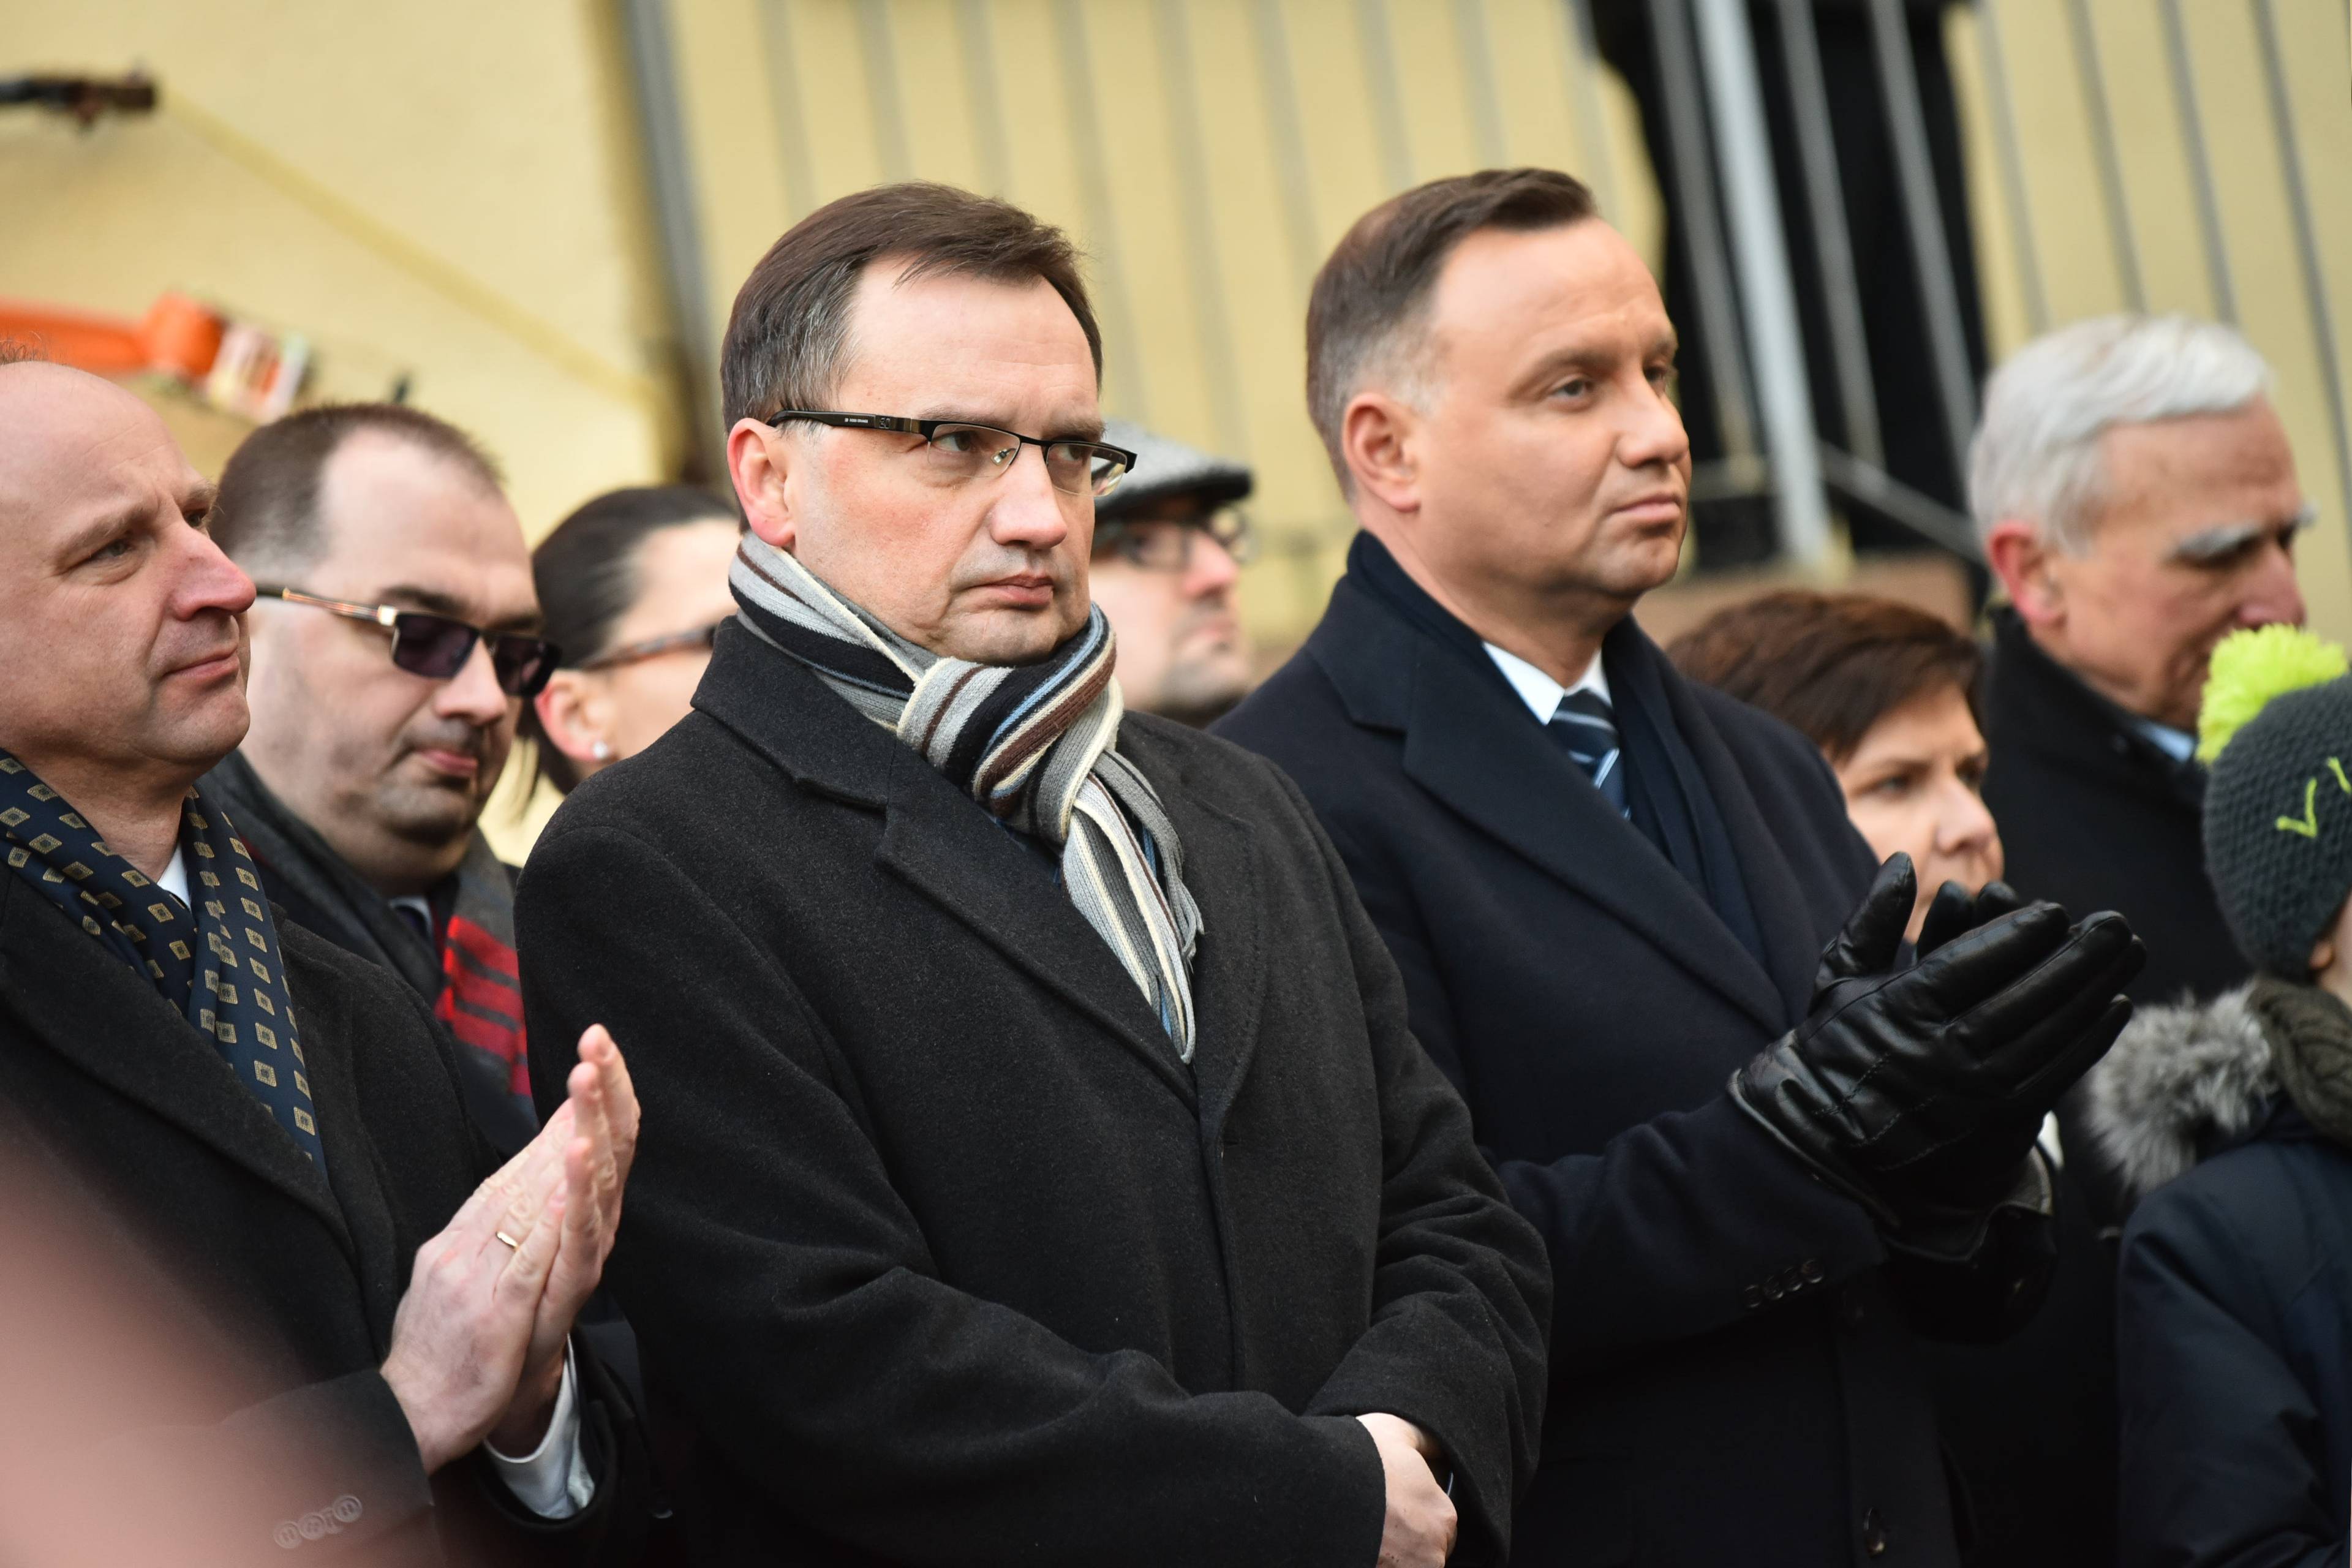 Zbigniew Ziobro i Andrzej Duda stoją obok siebie na świeżym powietrzu, obaj ubrani w płaszcze